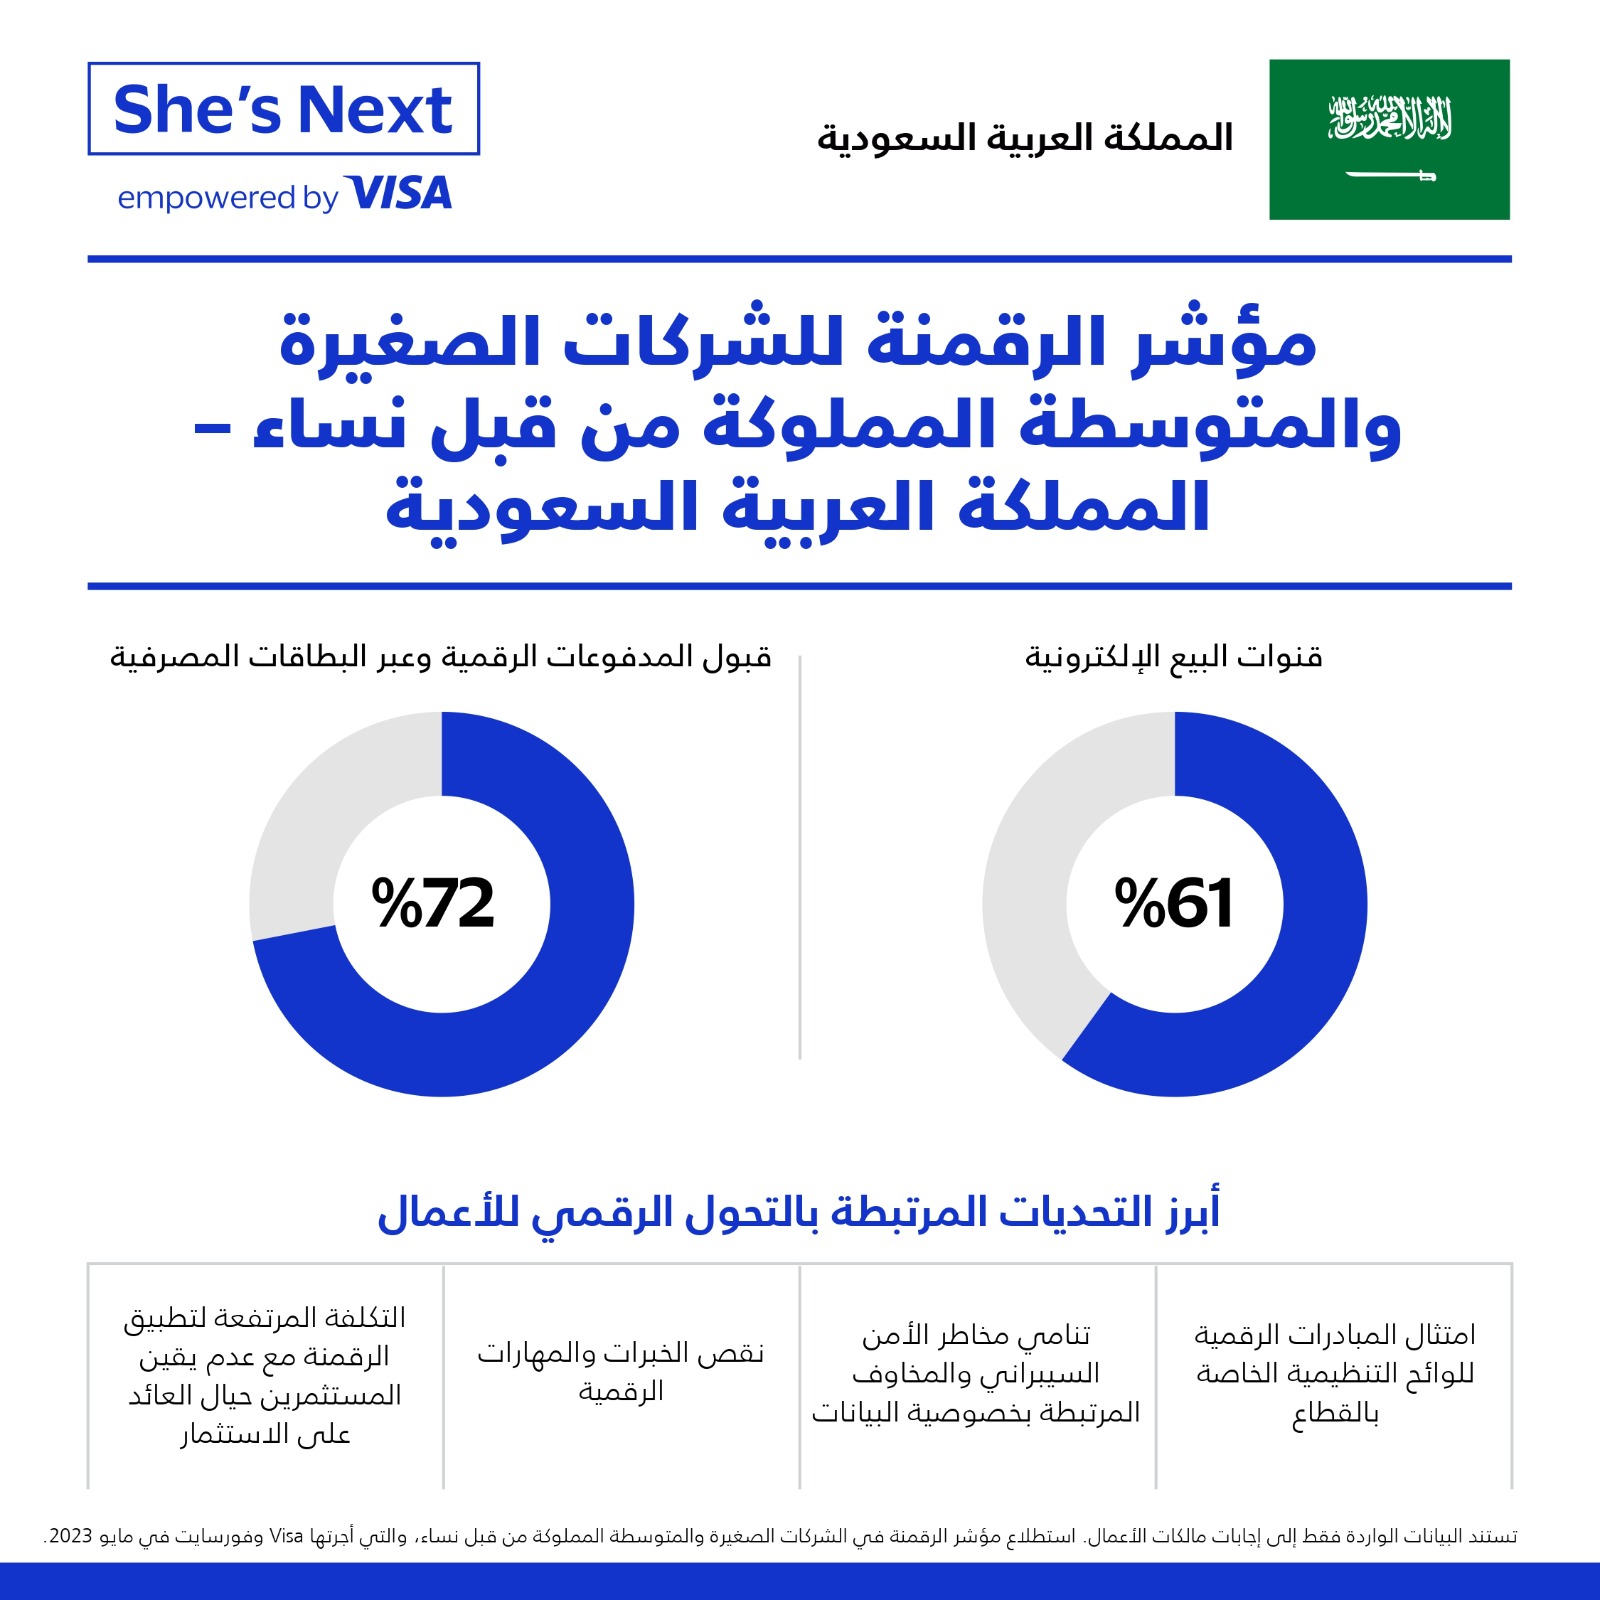 Visa تطلق النسخة الثانية من مبادرة “هي التالية” دعماً لمالكات الأعمال في السعودية